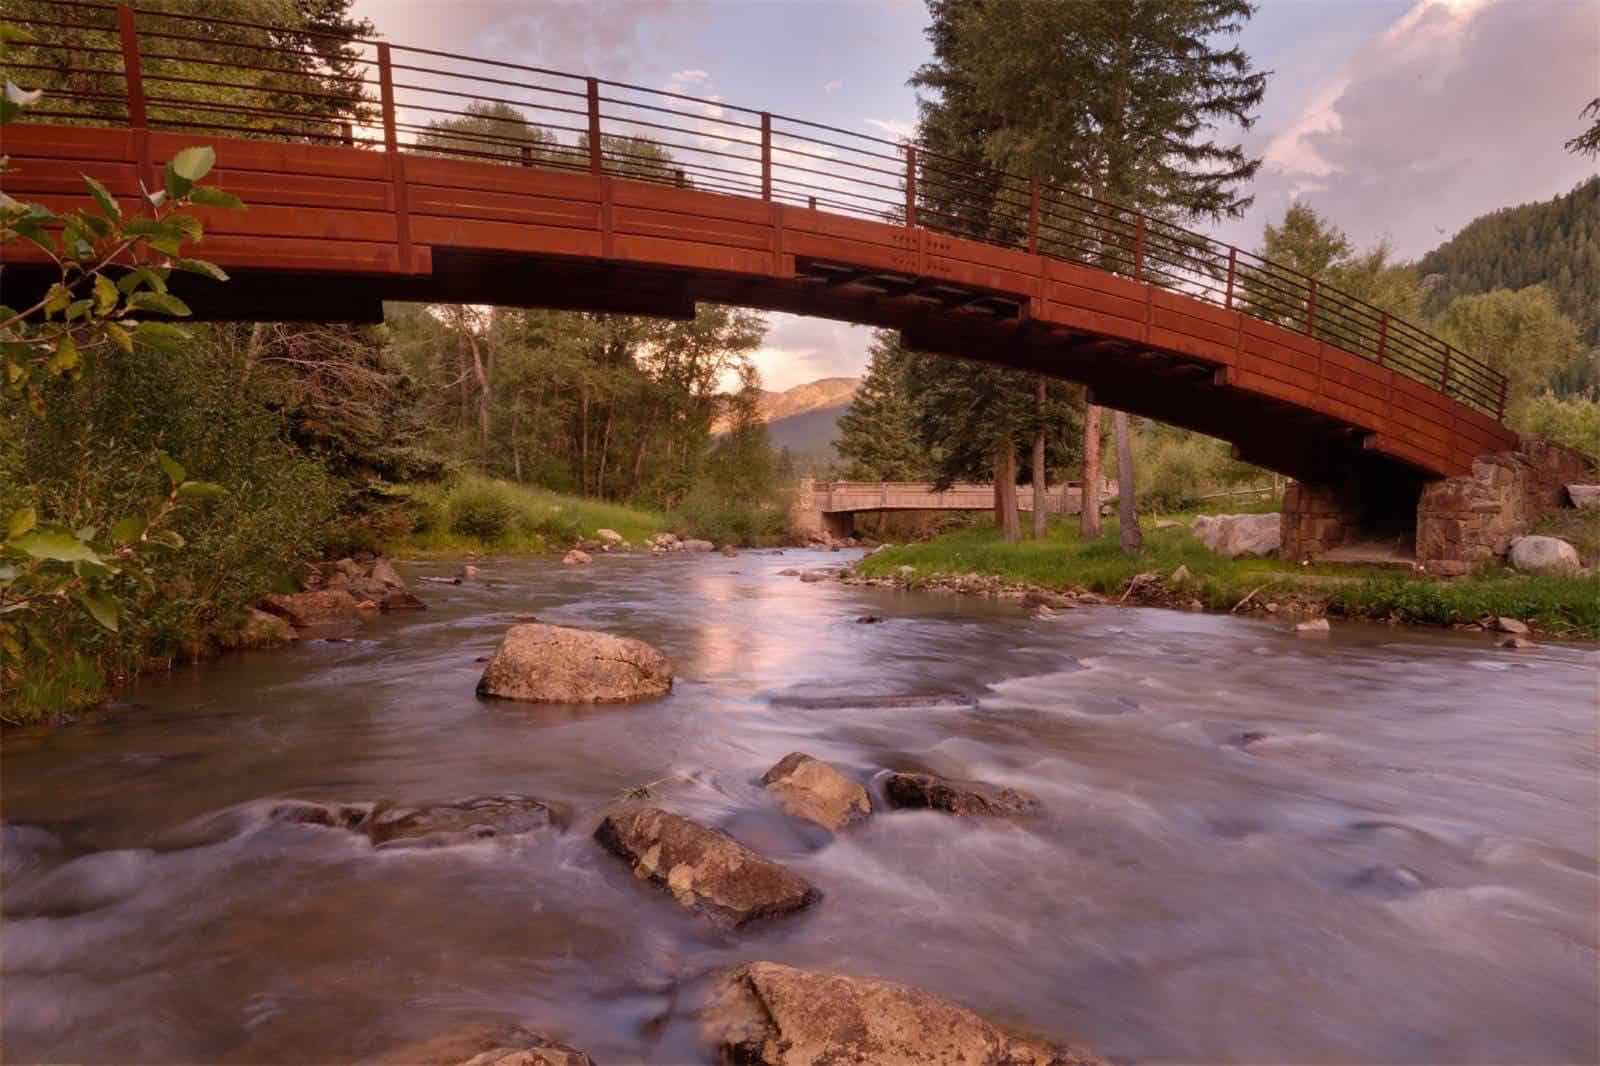 Lujosa mega propiedad recién construida a orillas de un río en Aspen, Colorado sale a la venta por $39,5 millones